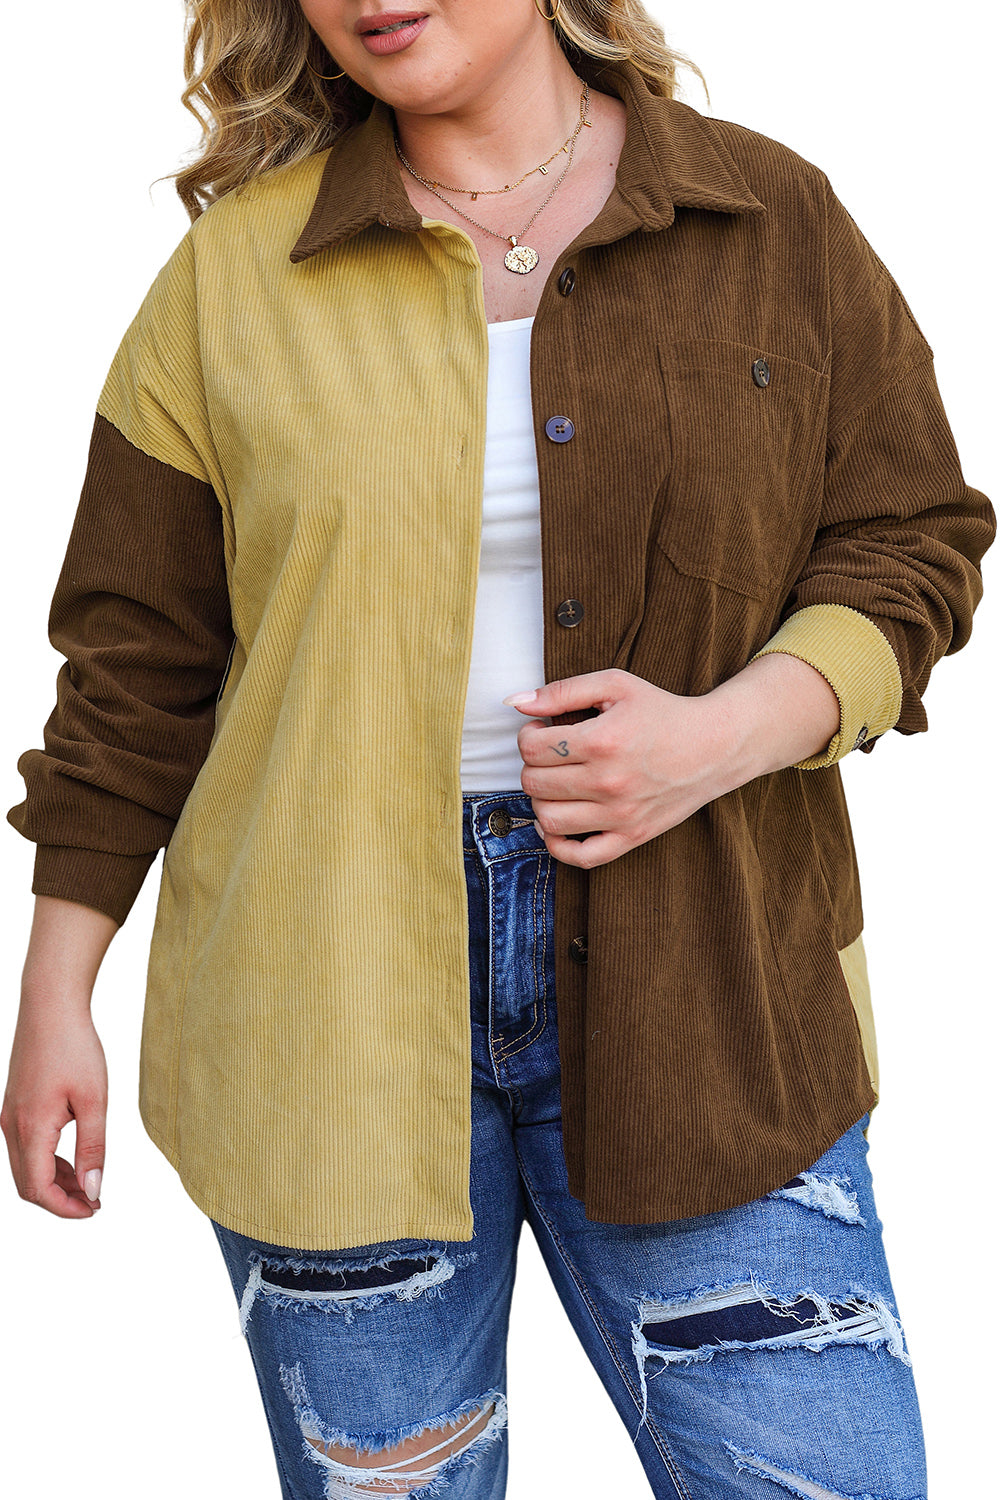 Rjava jakna iz barvnega bloka večje velikosti